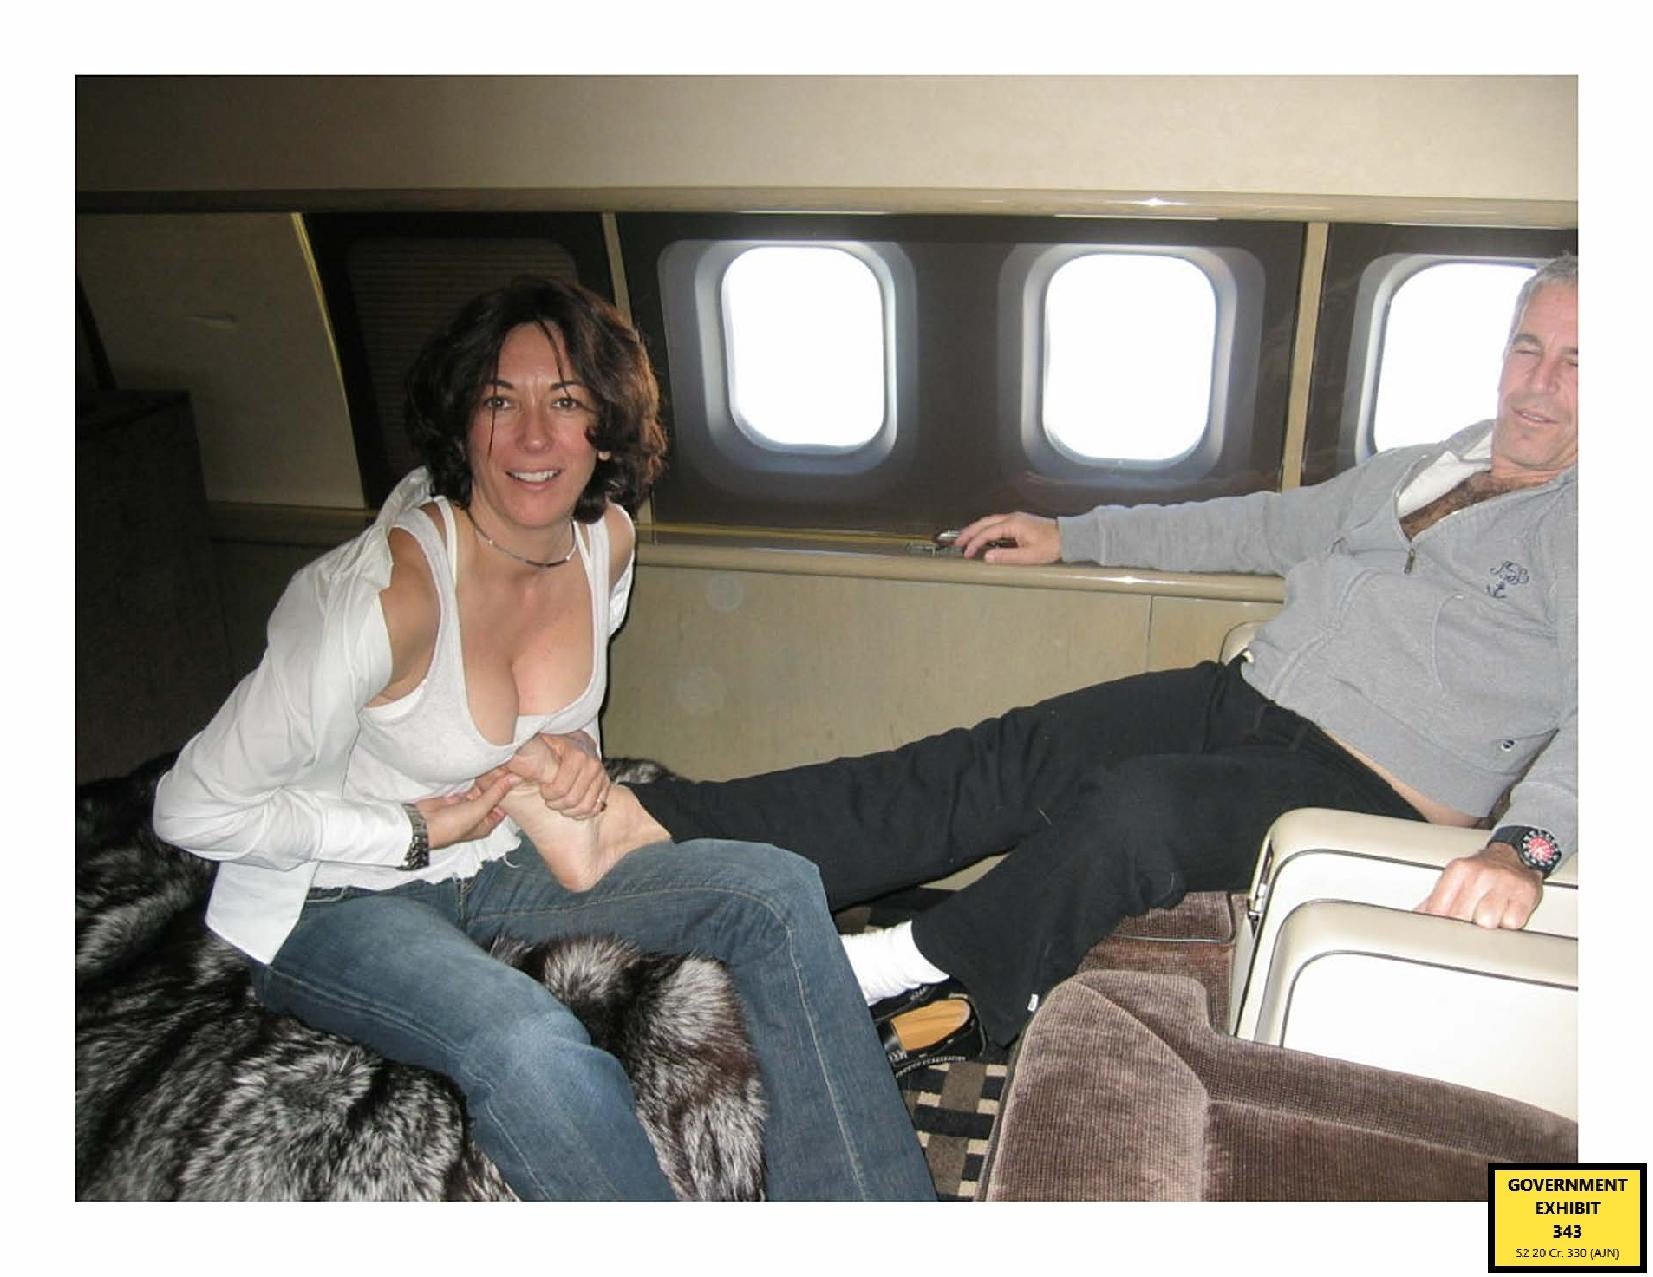 Una foto emitida por los fiscales muestra a Ghislaine Maxwell mientras le da un masaje de pies a Jeffrey Epstein a bordo de un jet privado